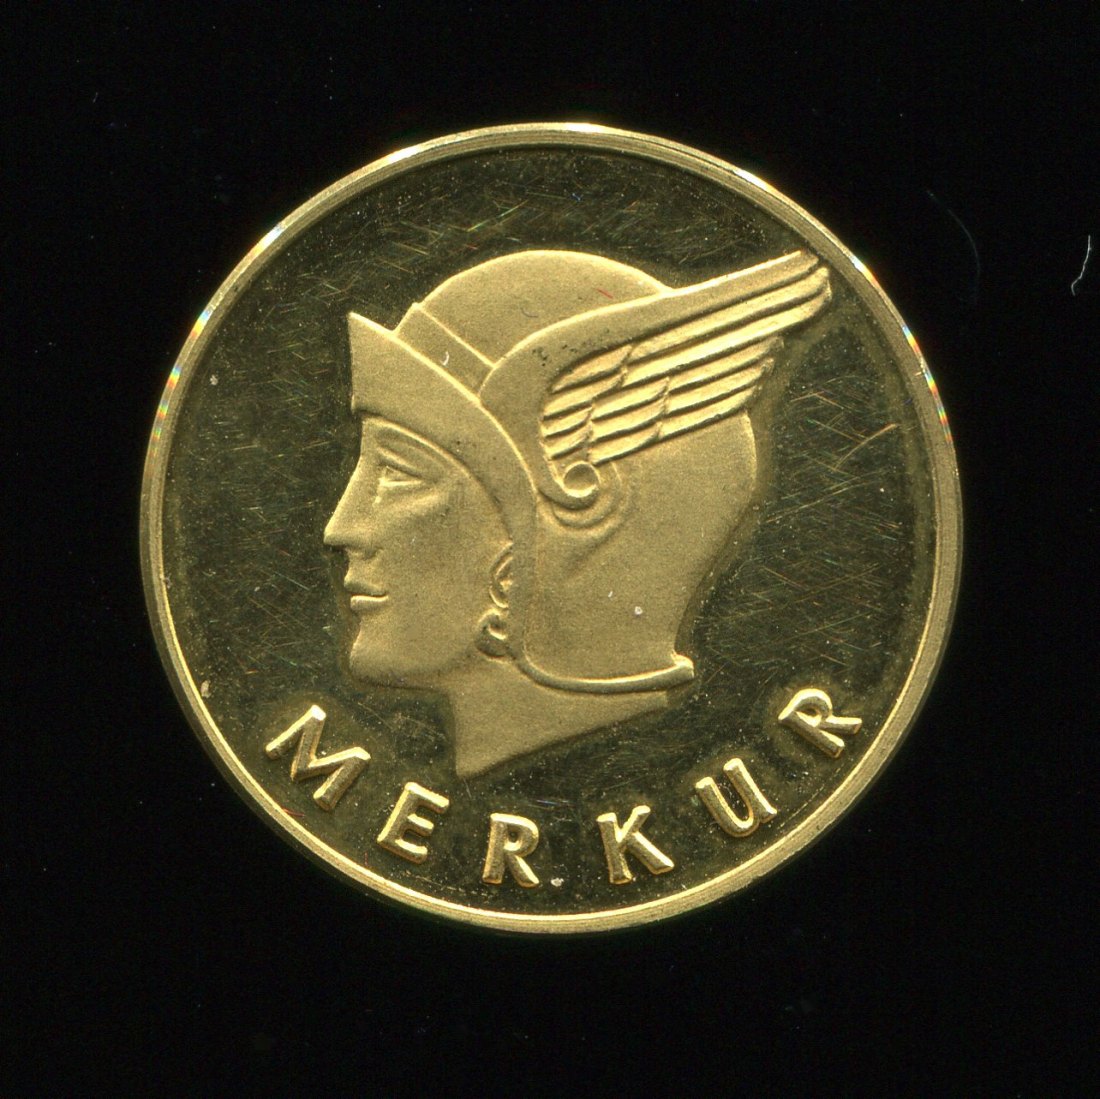  Merkur Gold Medaille in 900 Au ca. 3,32 g   